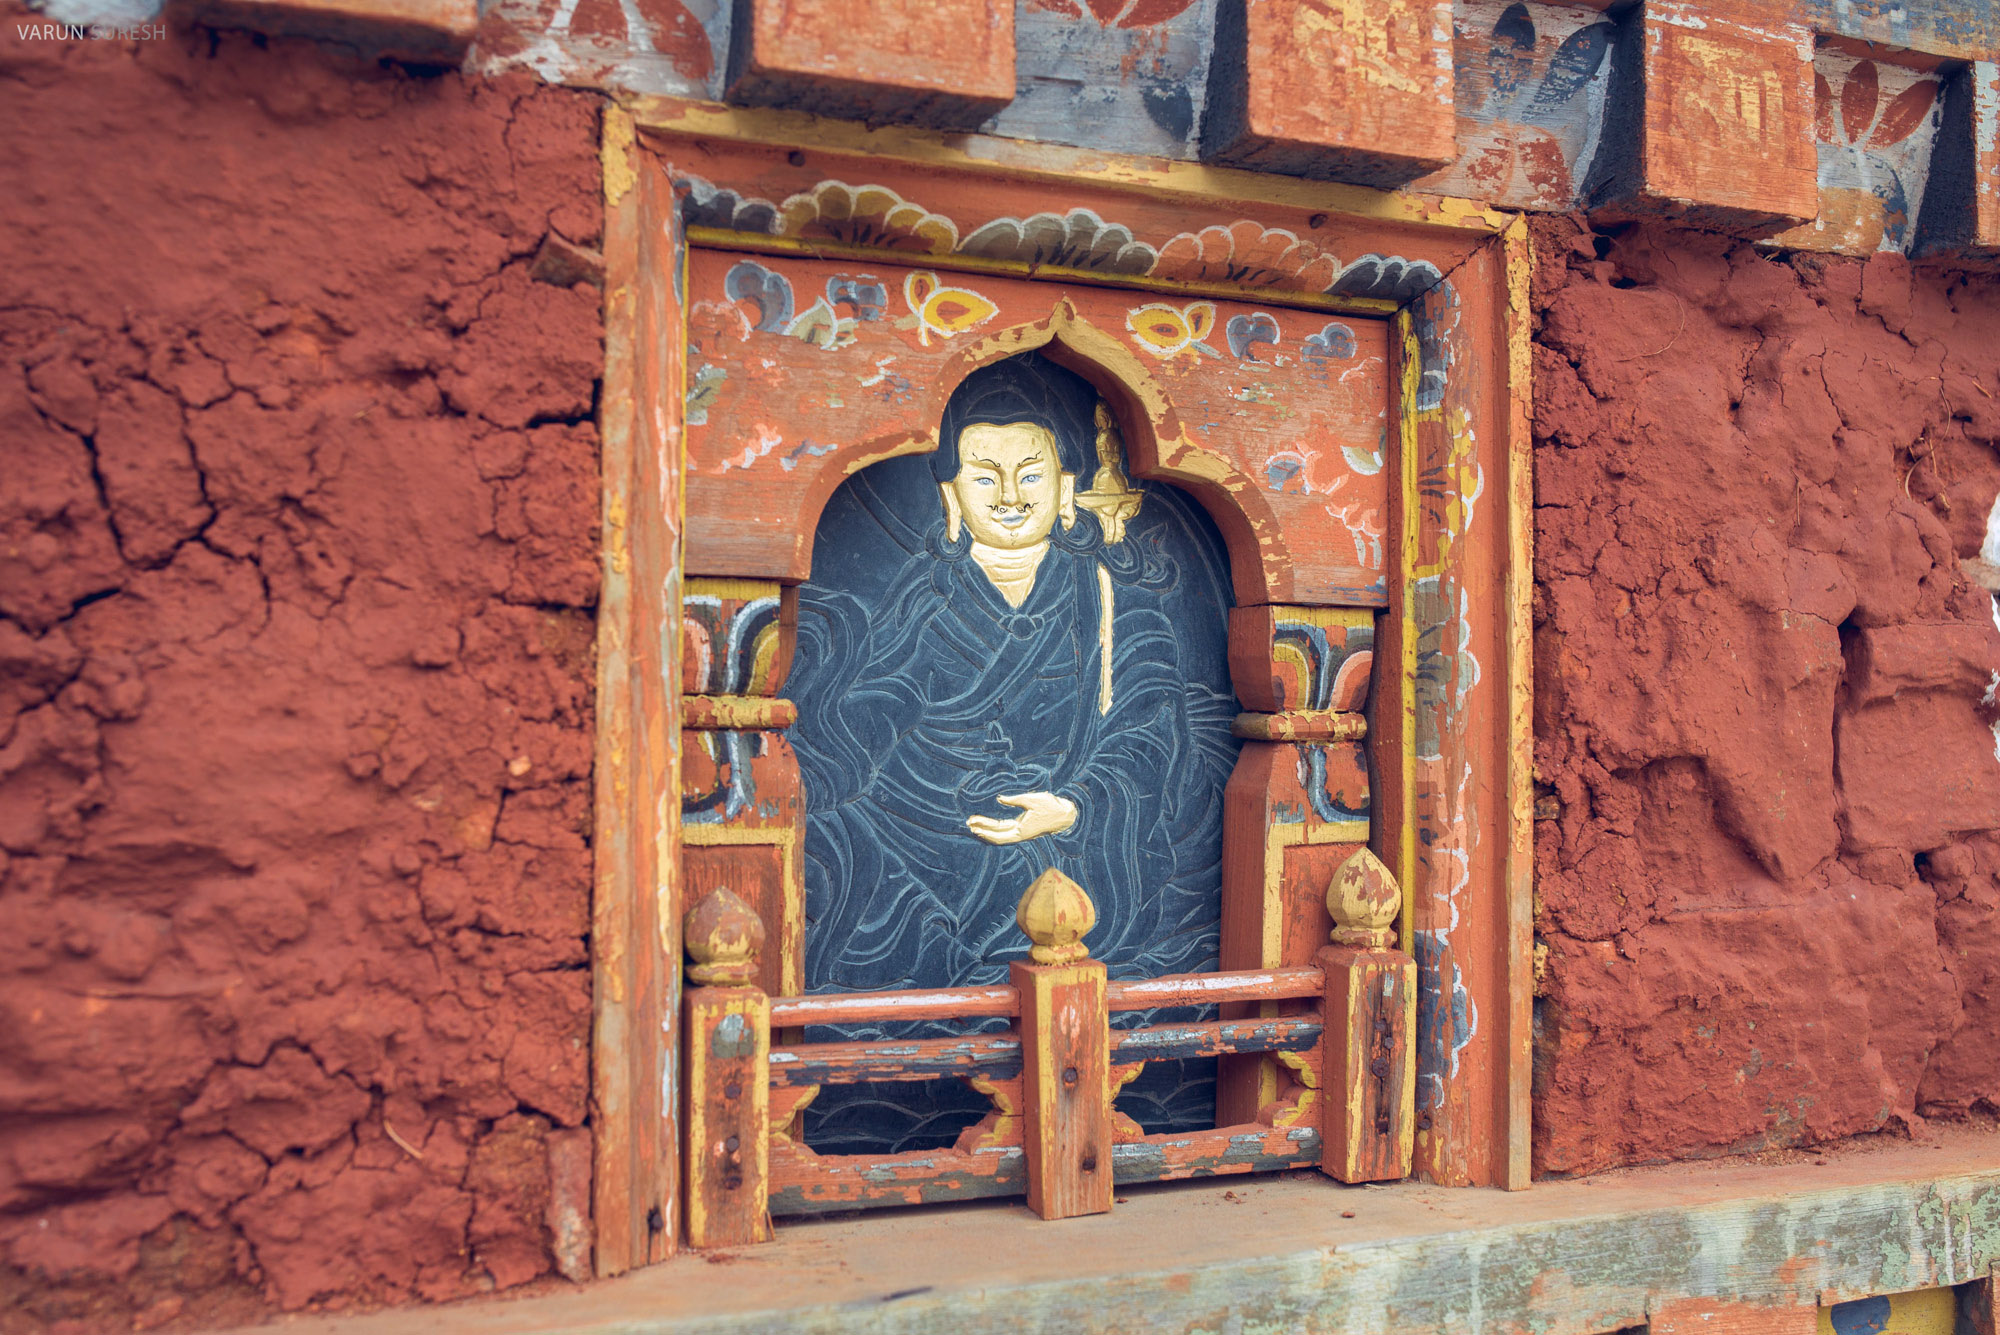 Bhutan_064.jpg